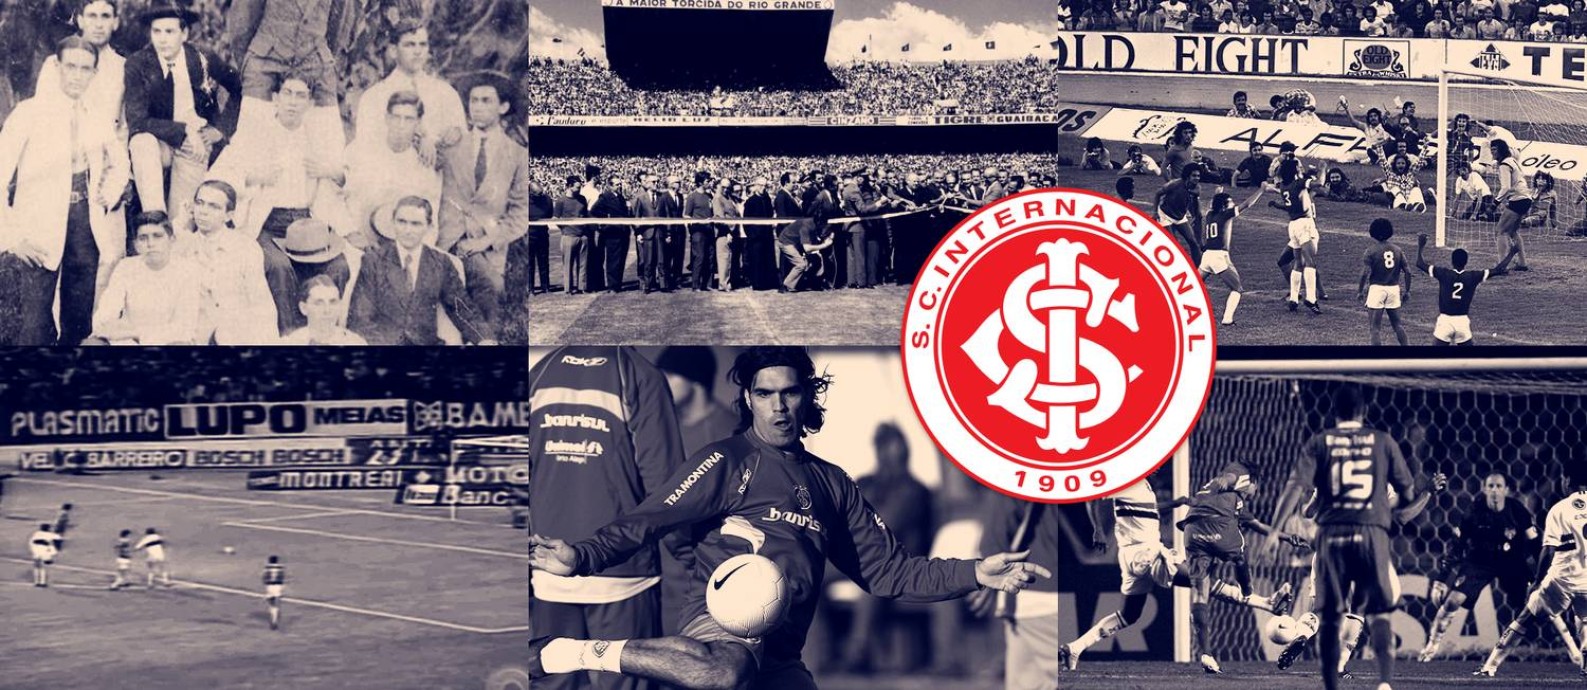 História do Sport Club Internacional